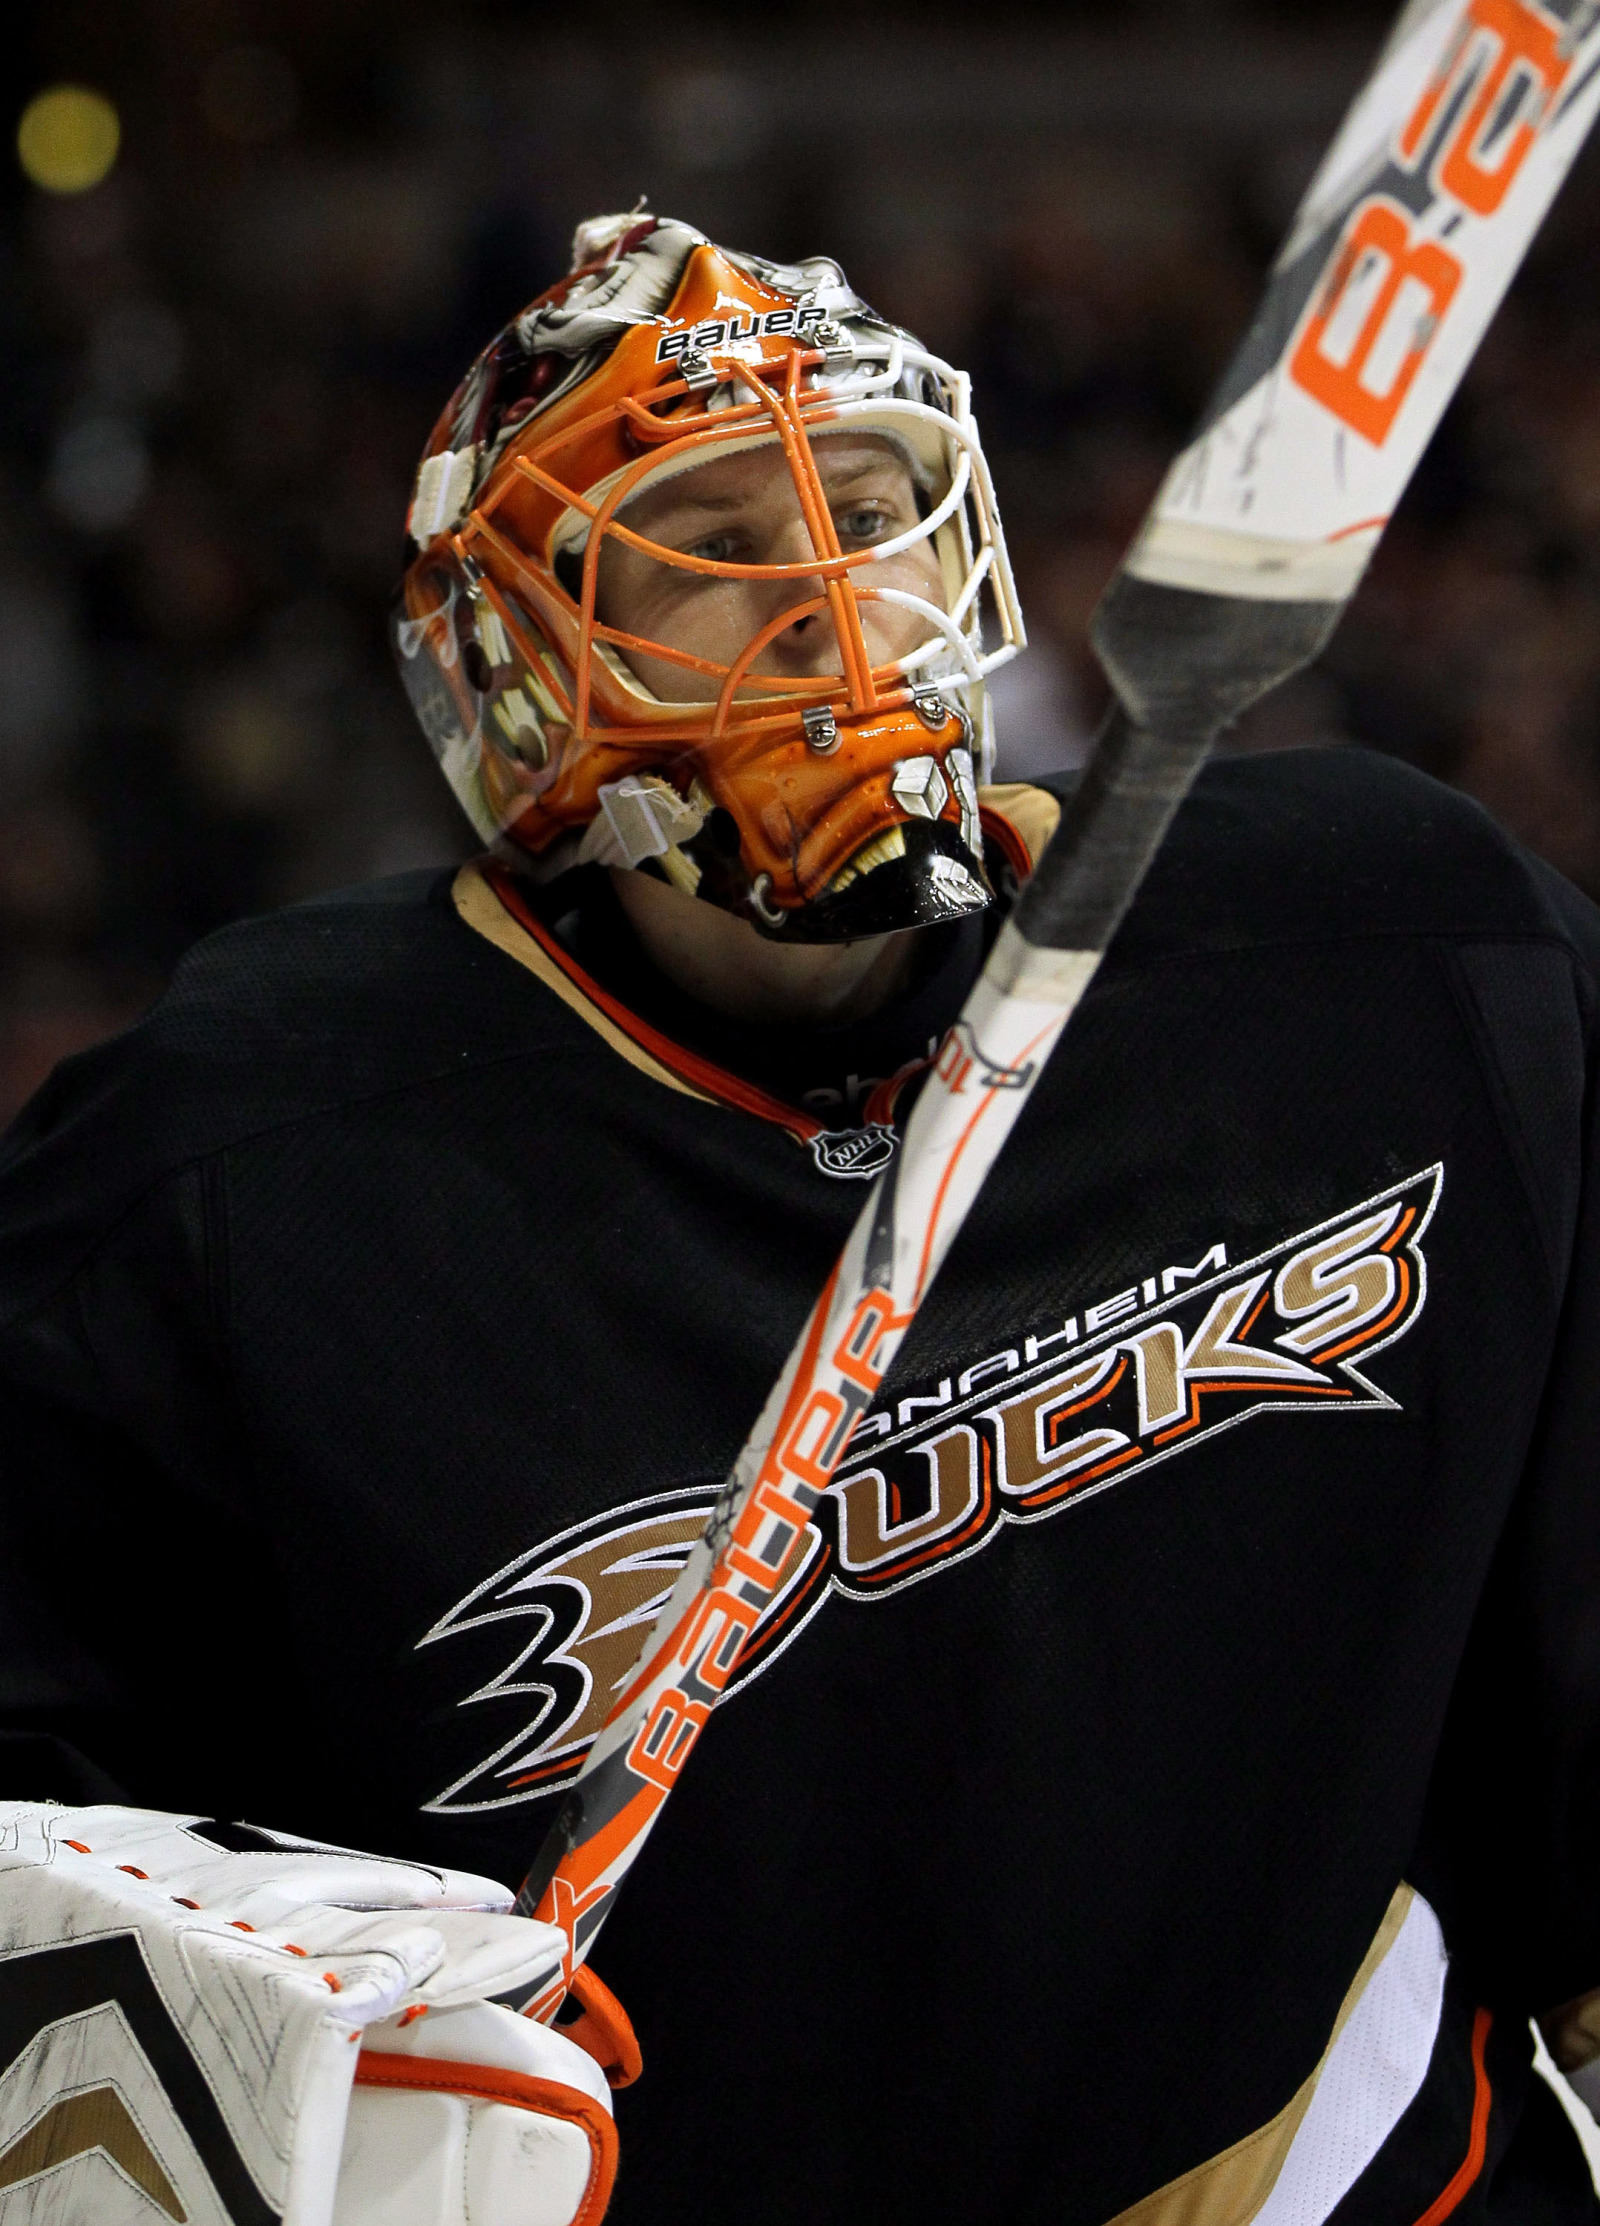 Anaheim Ducks: The Goalie Mask is A Work of Art